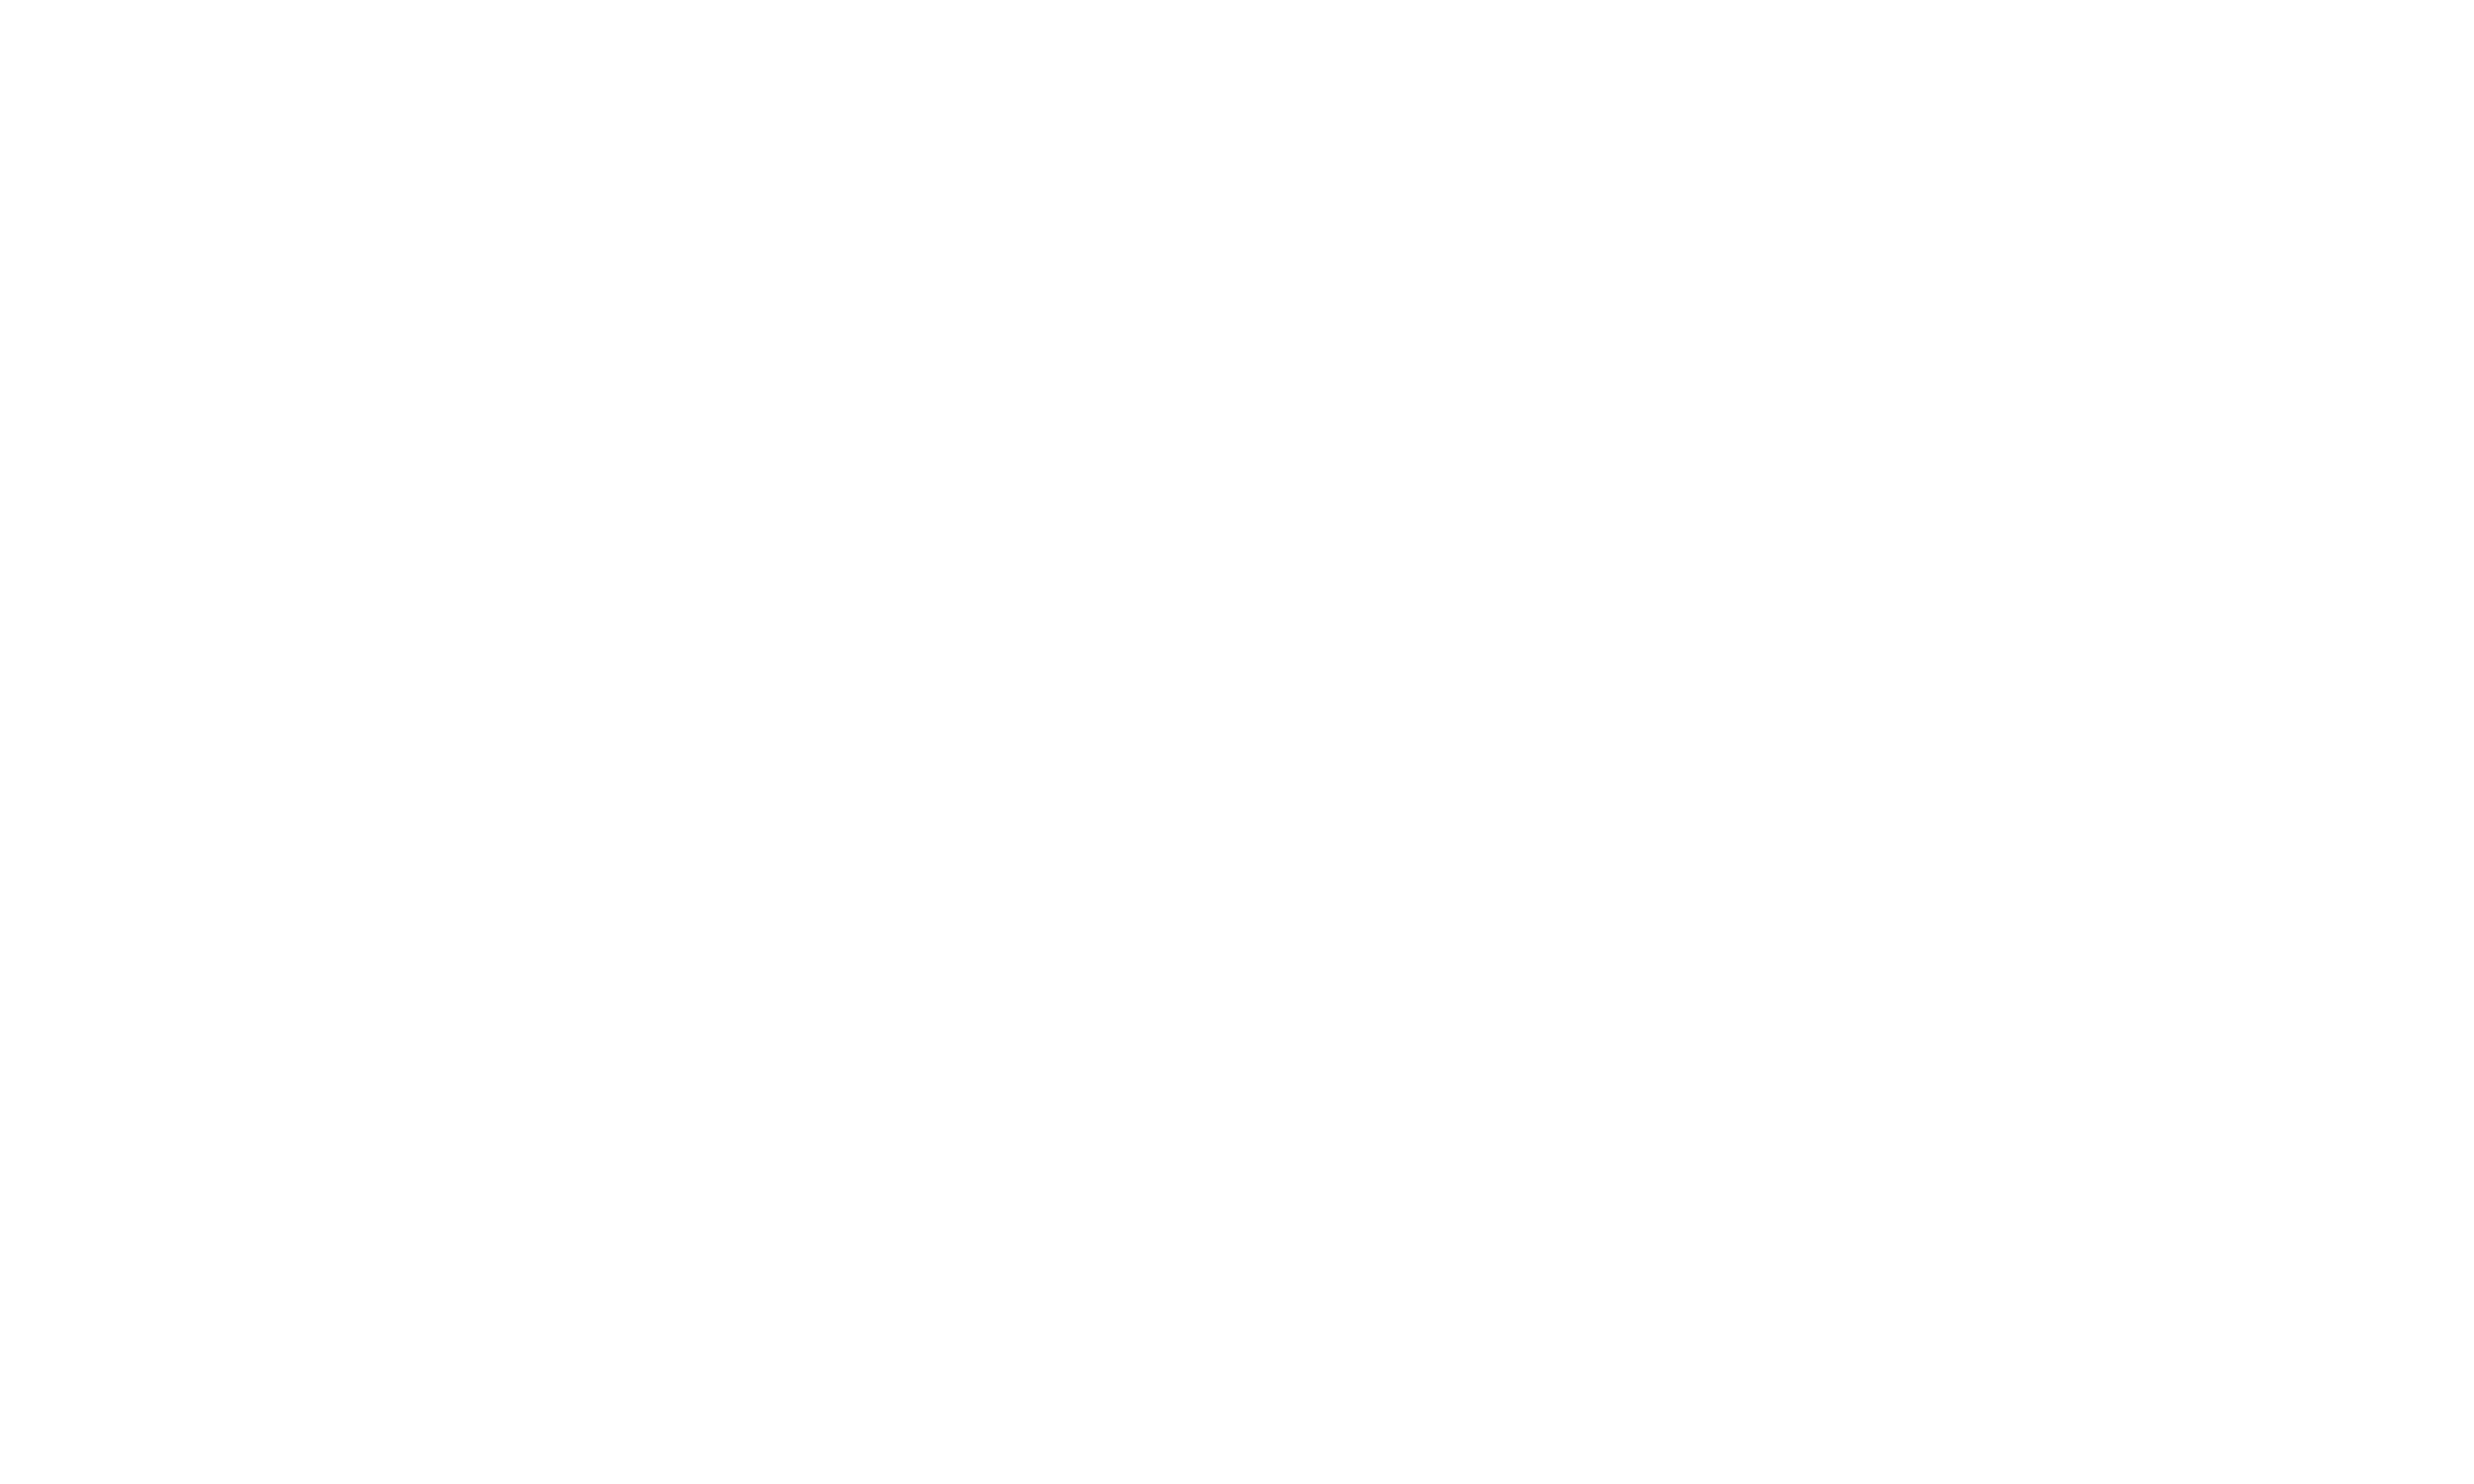 Claims Ninjas